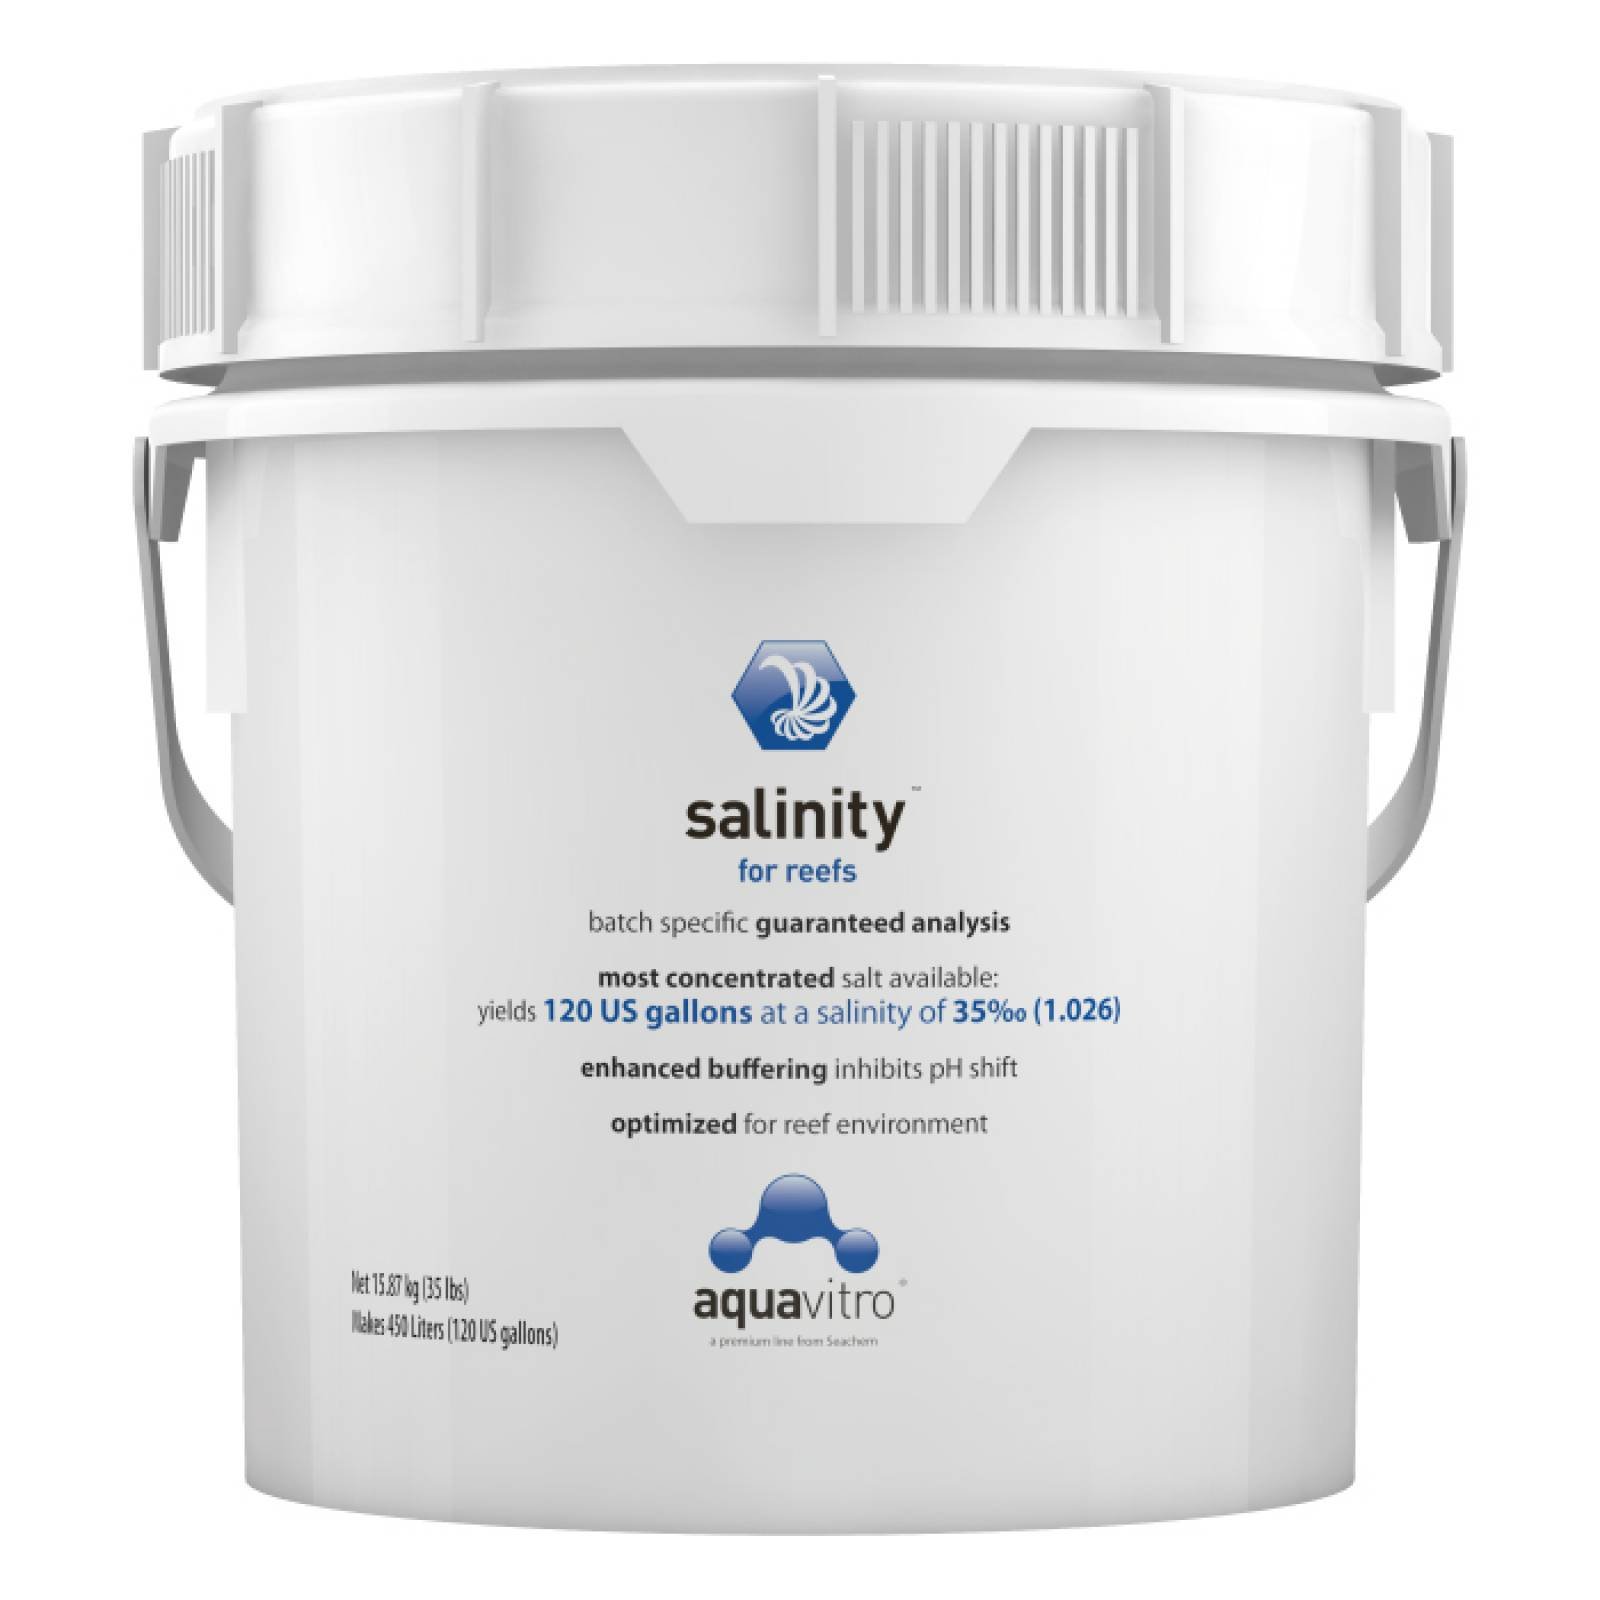 Aquavitro Salinity Preparado Anhidro Profesional 15,7 kg Prepara 120 galones Especial Arrecife